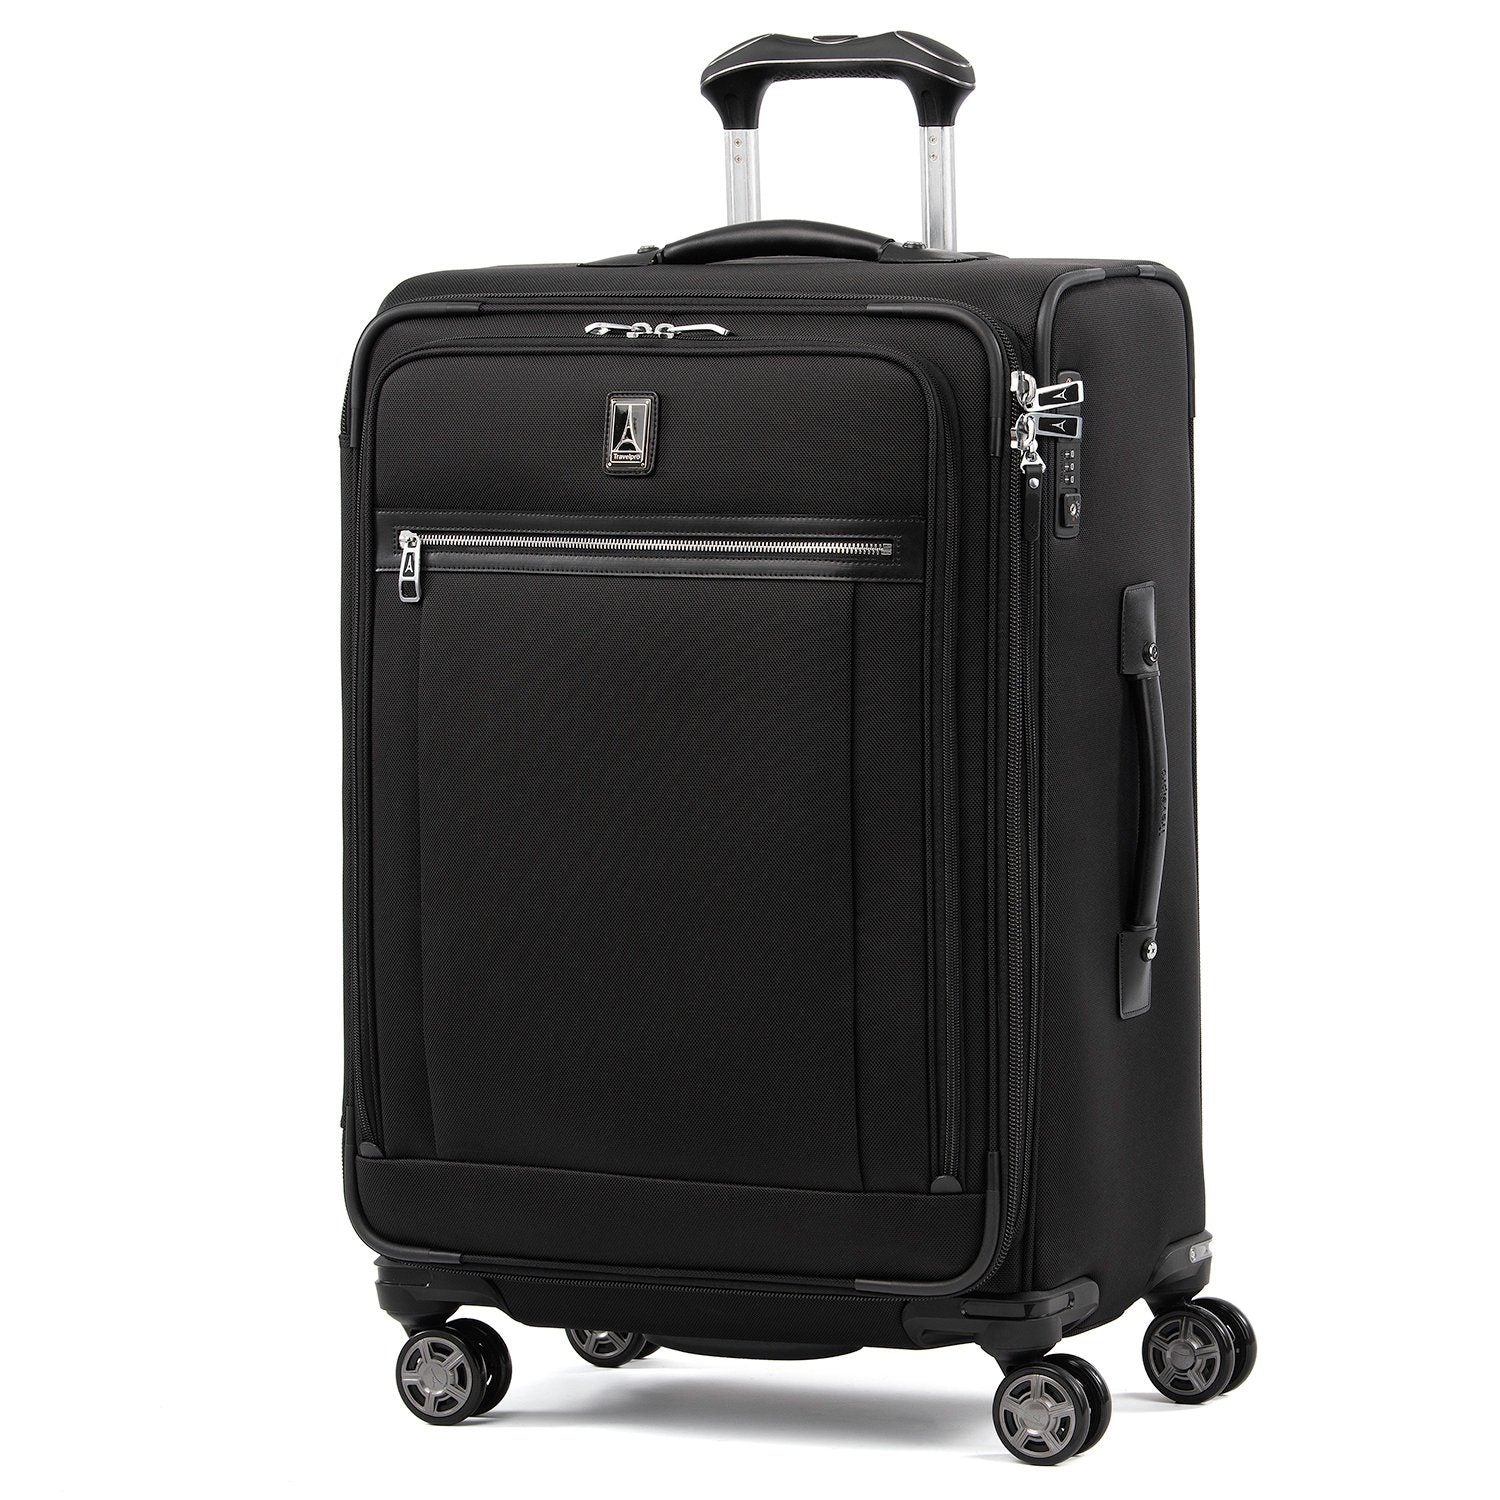 Platinum Elite Softside Luggage - Superior Durability & Style ...